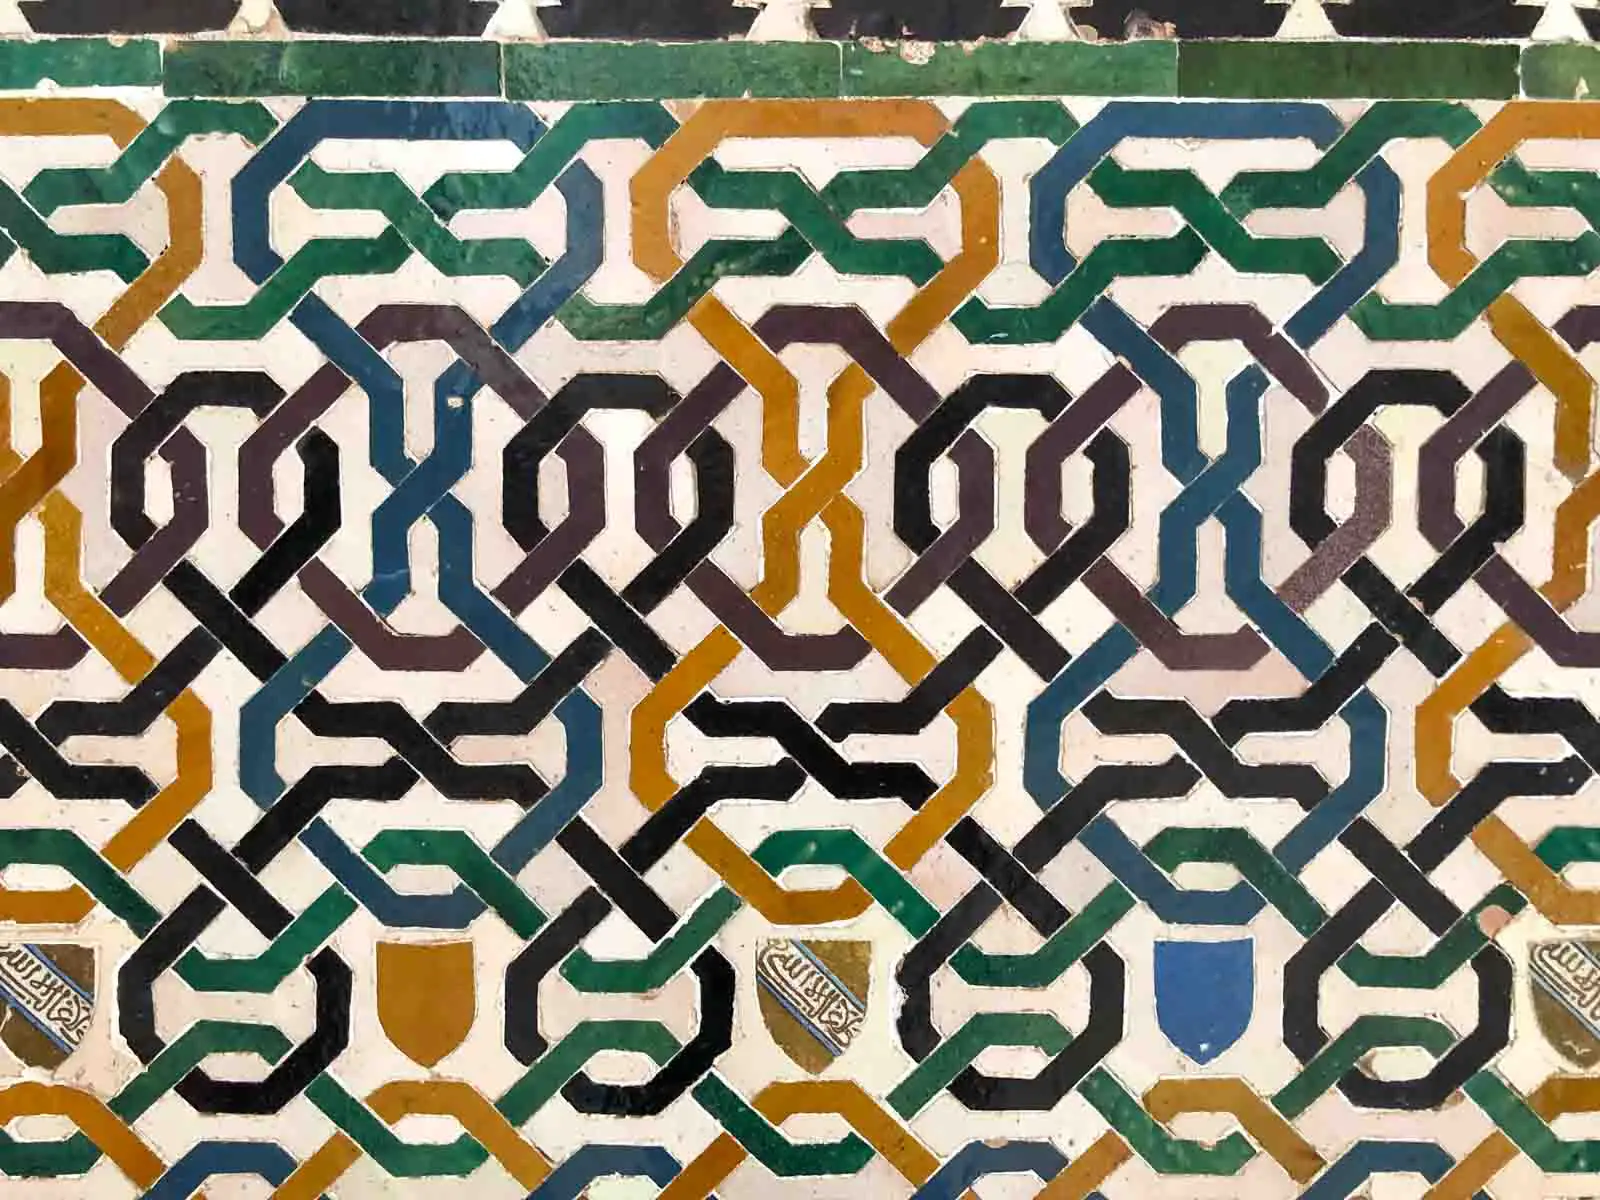 Bunte, grafische Muster auf Kacheln in der Alhmabra von Granada